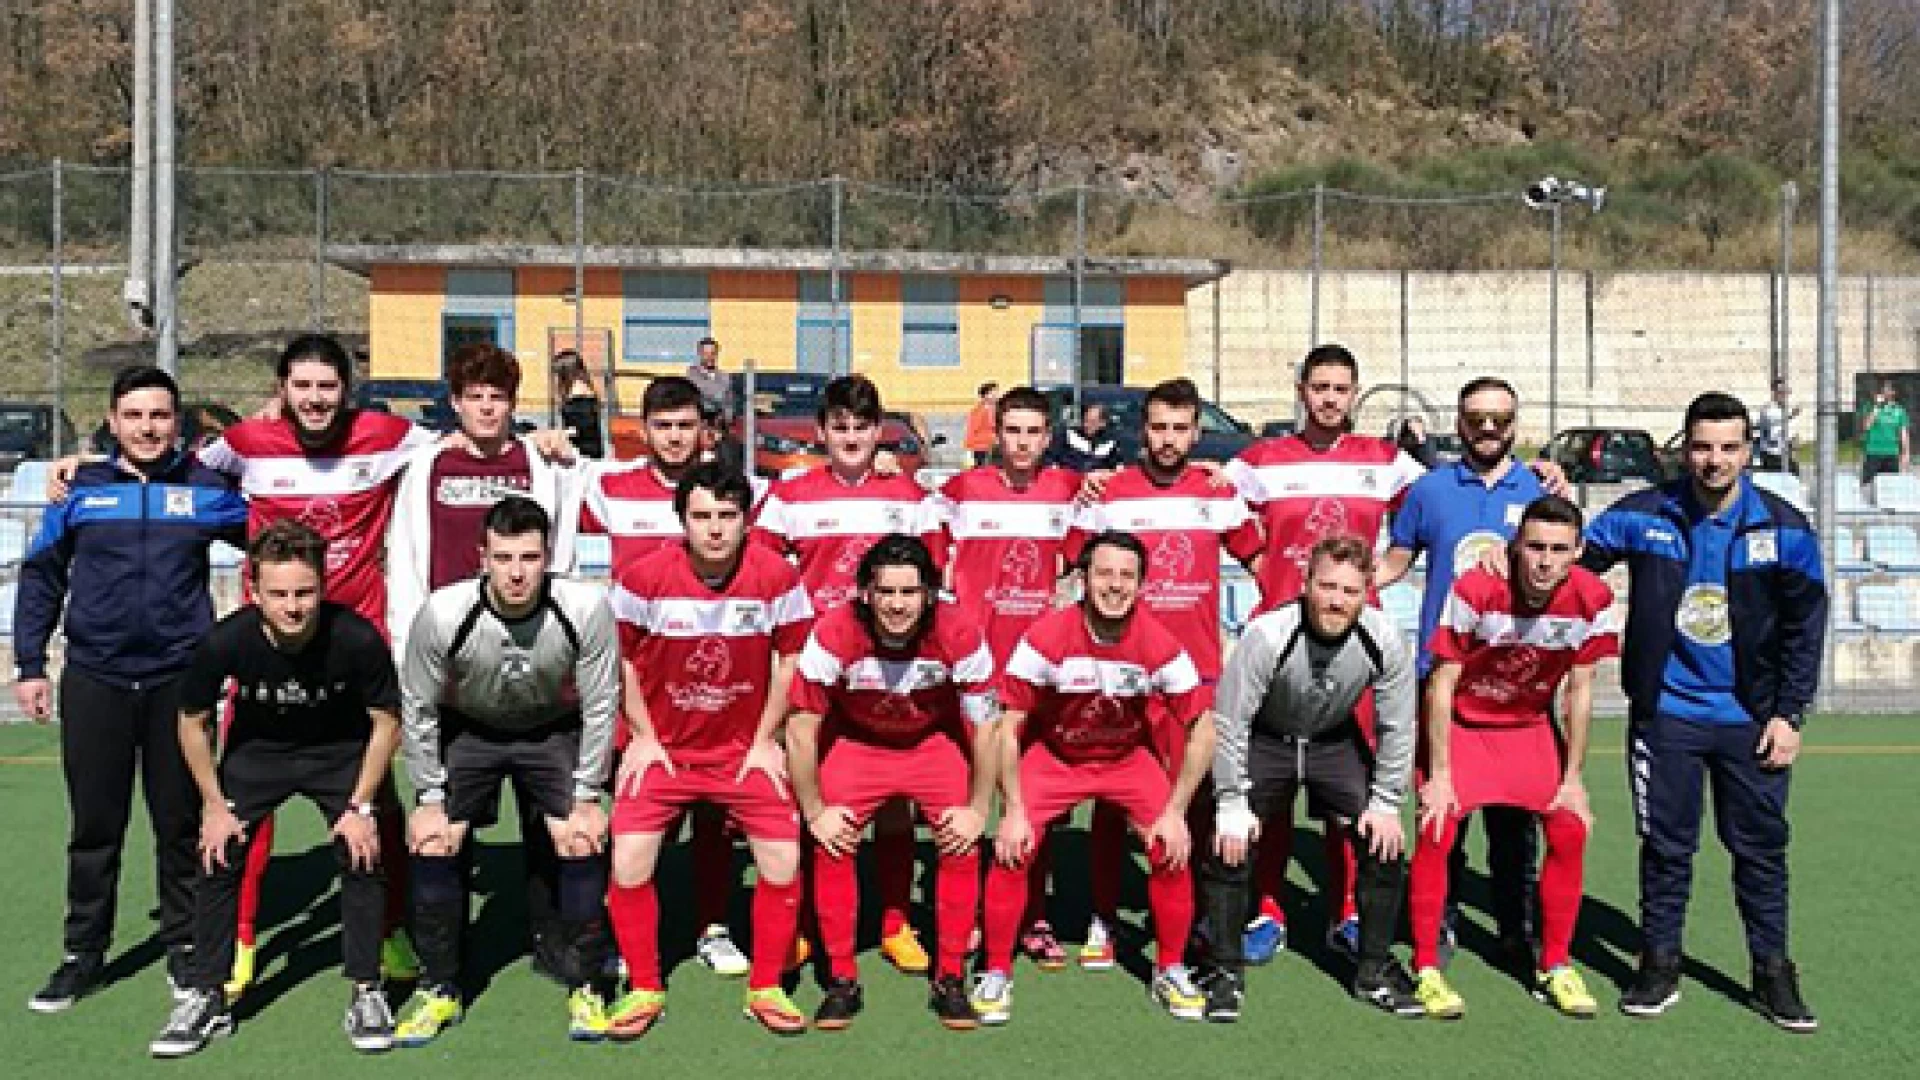 Calcio a 5: il sogno ancora possibile della Futsal Colli. Il campionato si deciderà all’ultima giornata. La formazione di Ricci a -1 dalla capolista Frosolone sconfitta sabato.